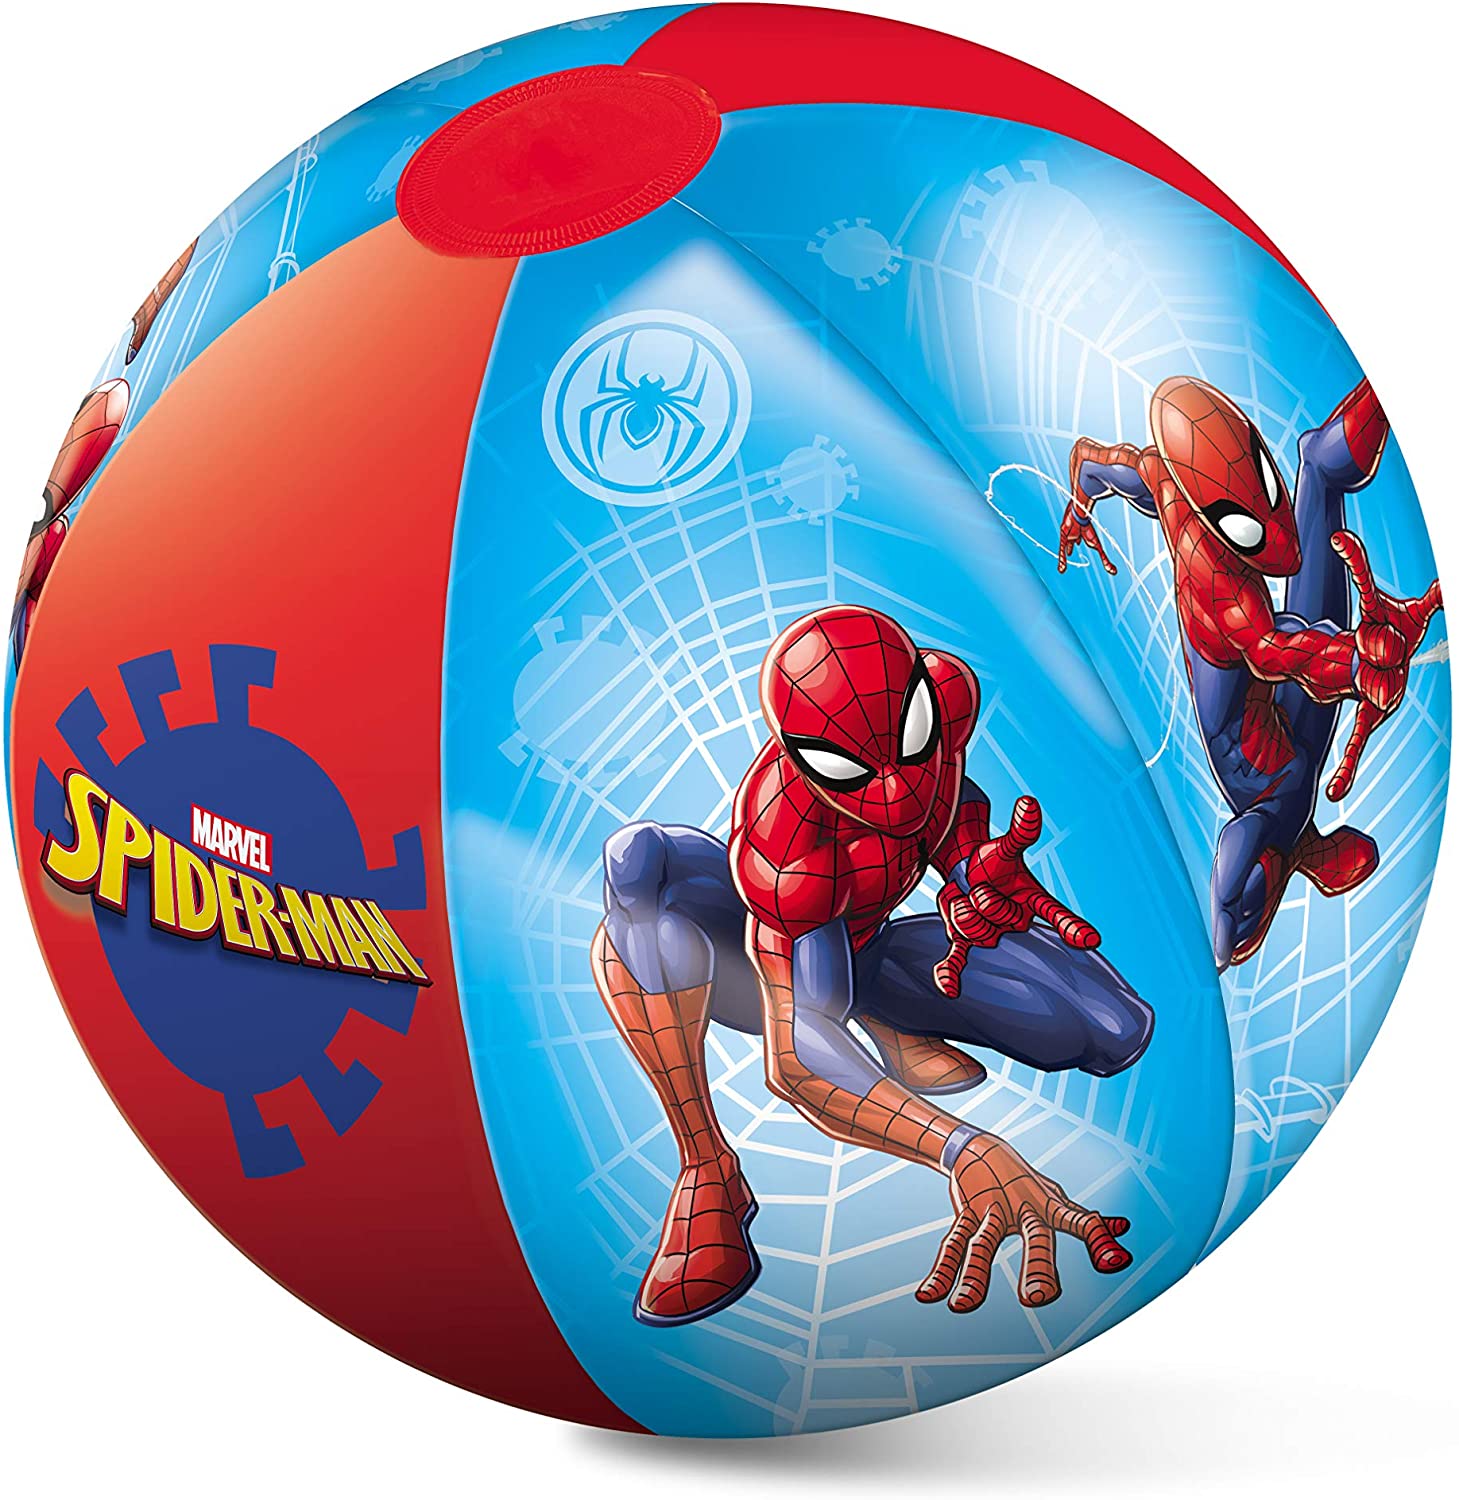 Pallone da spiaggia Spiderman